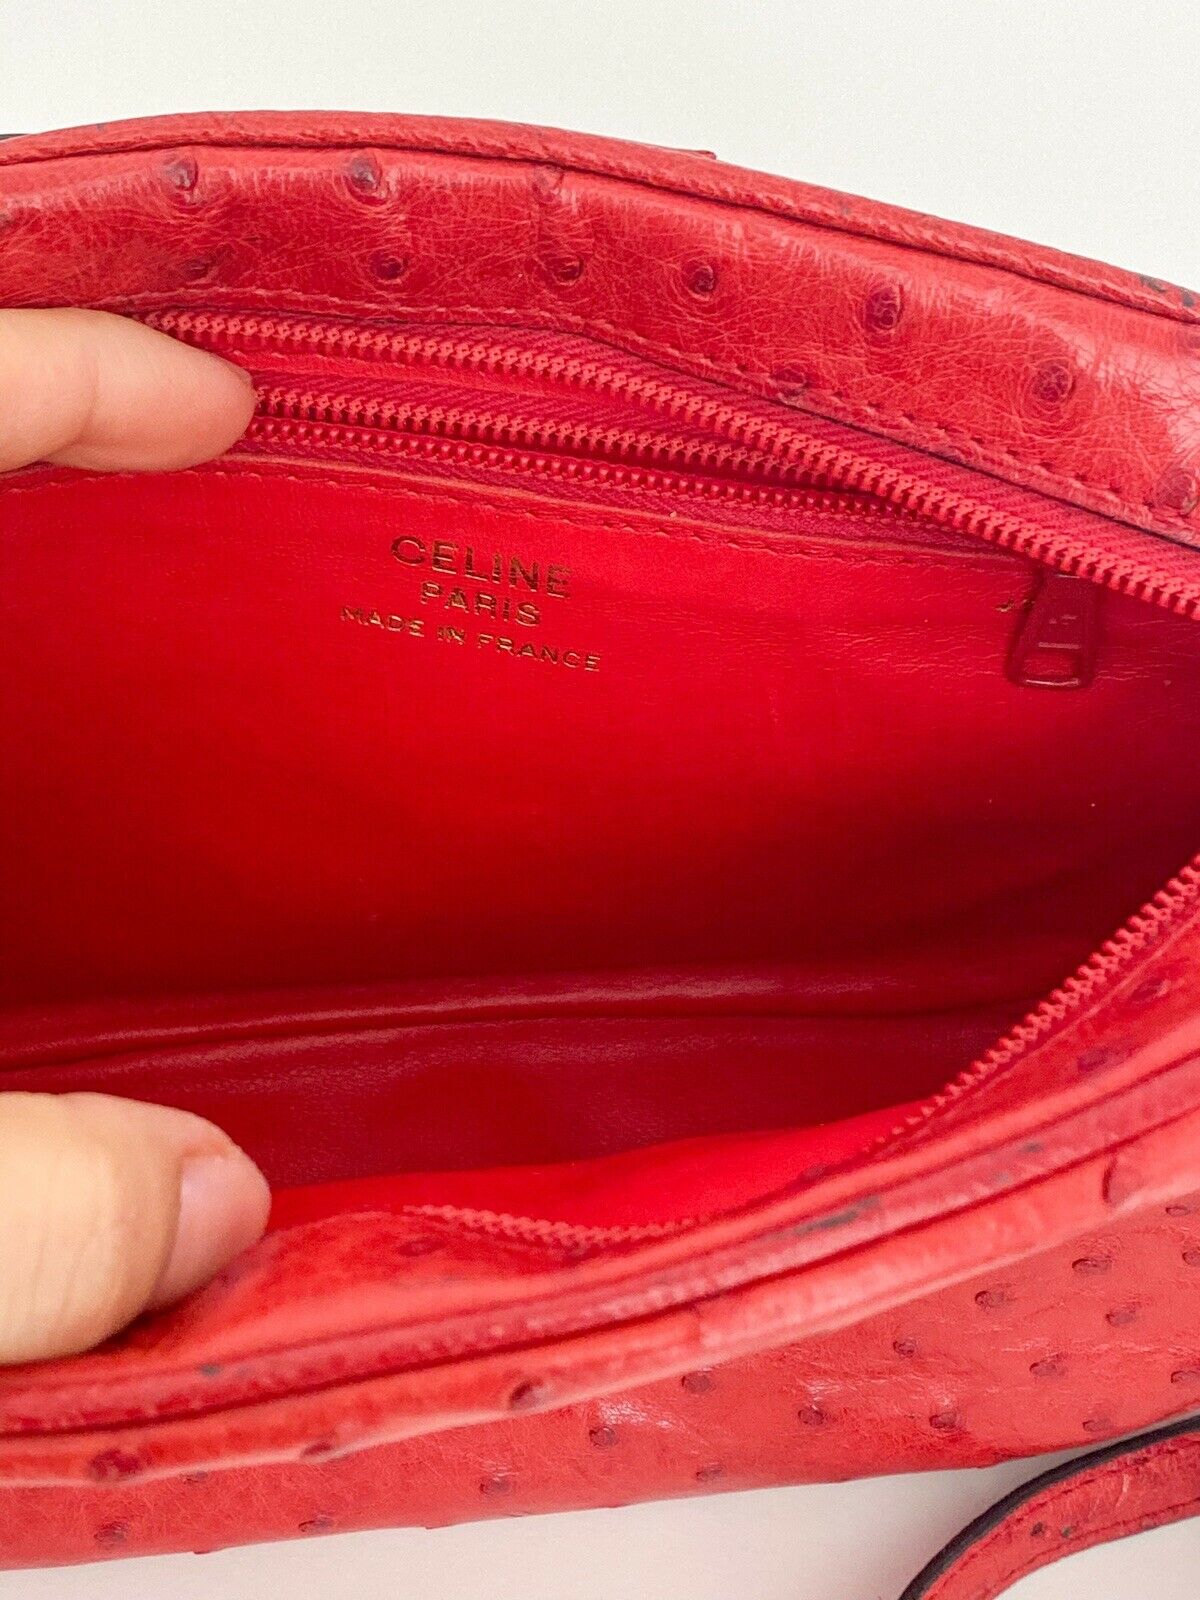 Celine Paris Made in France Red Color Ostrich Shoulder Bag